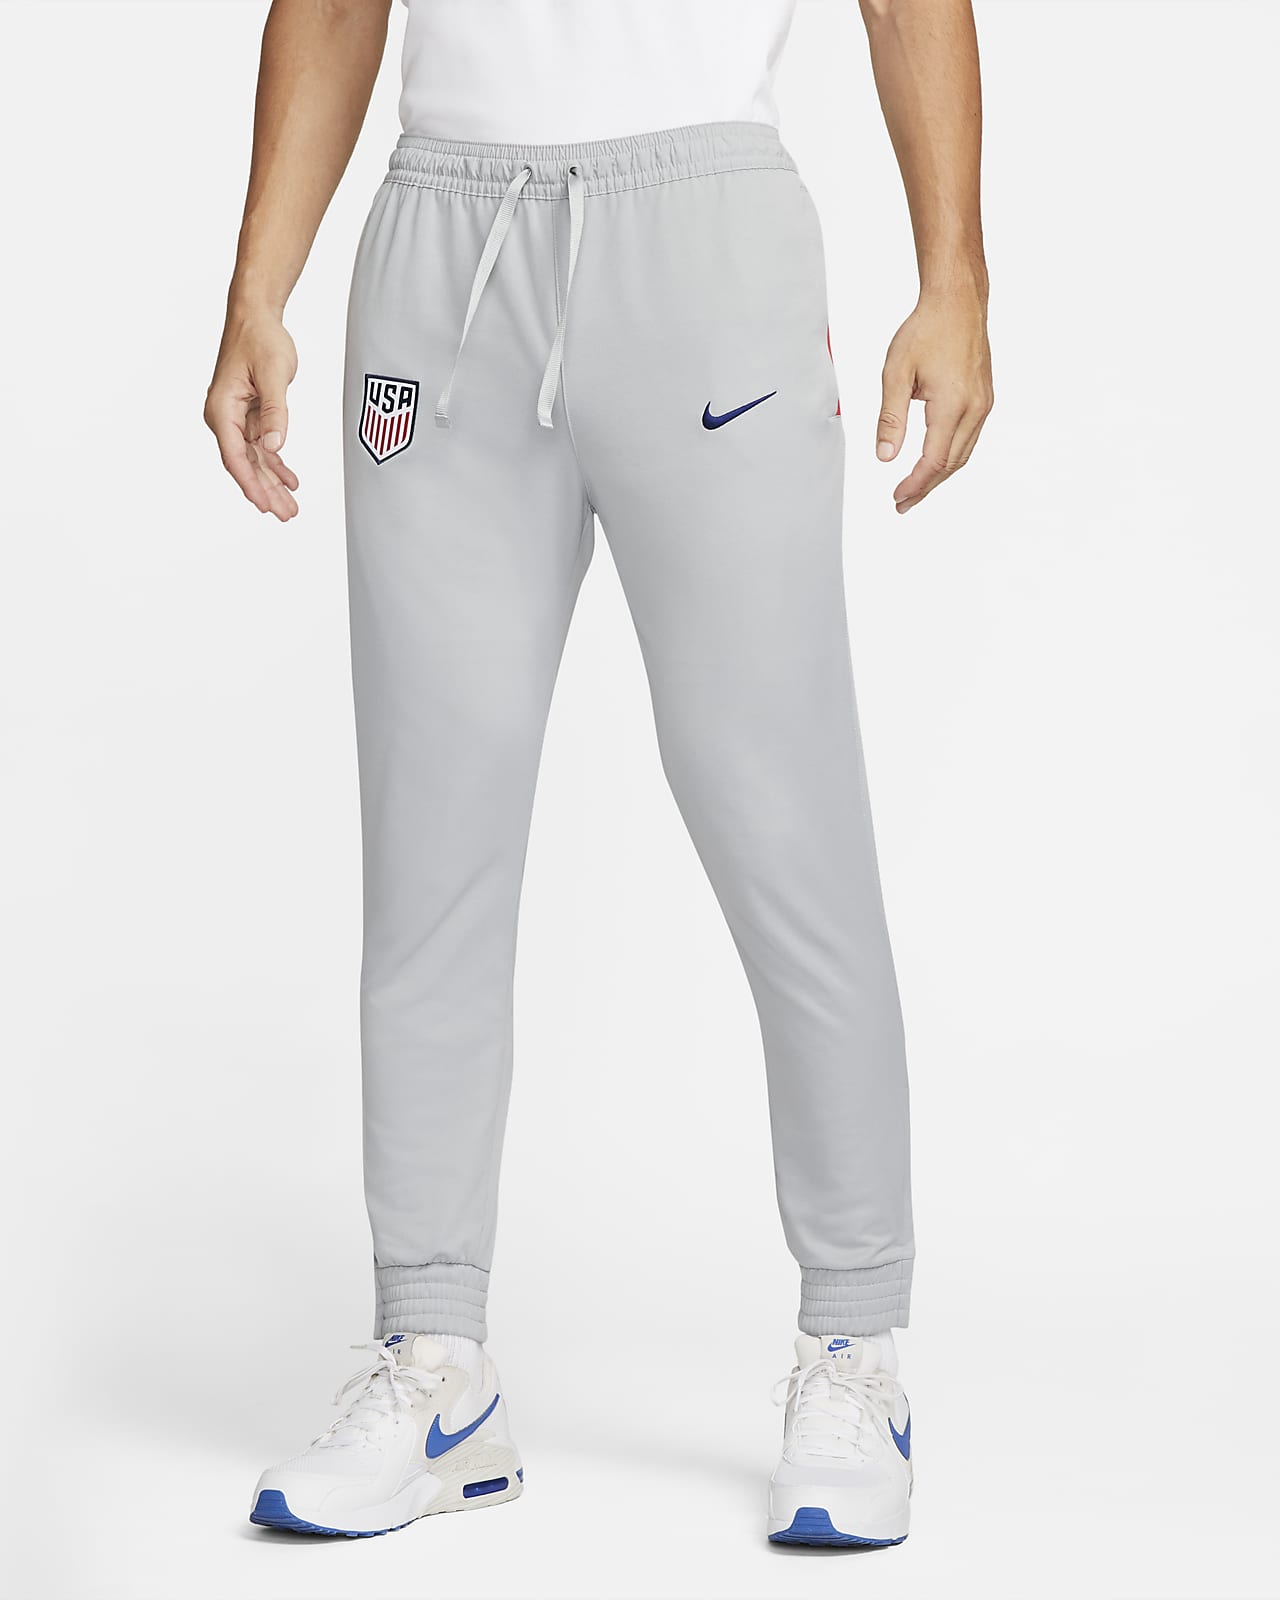 U.S. Men's Knit Pants. Nike.com